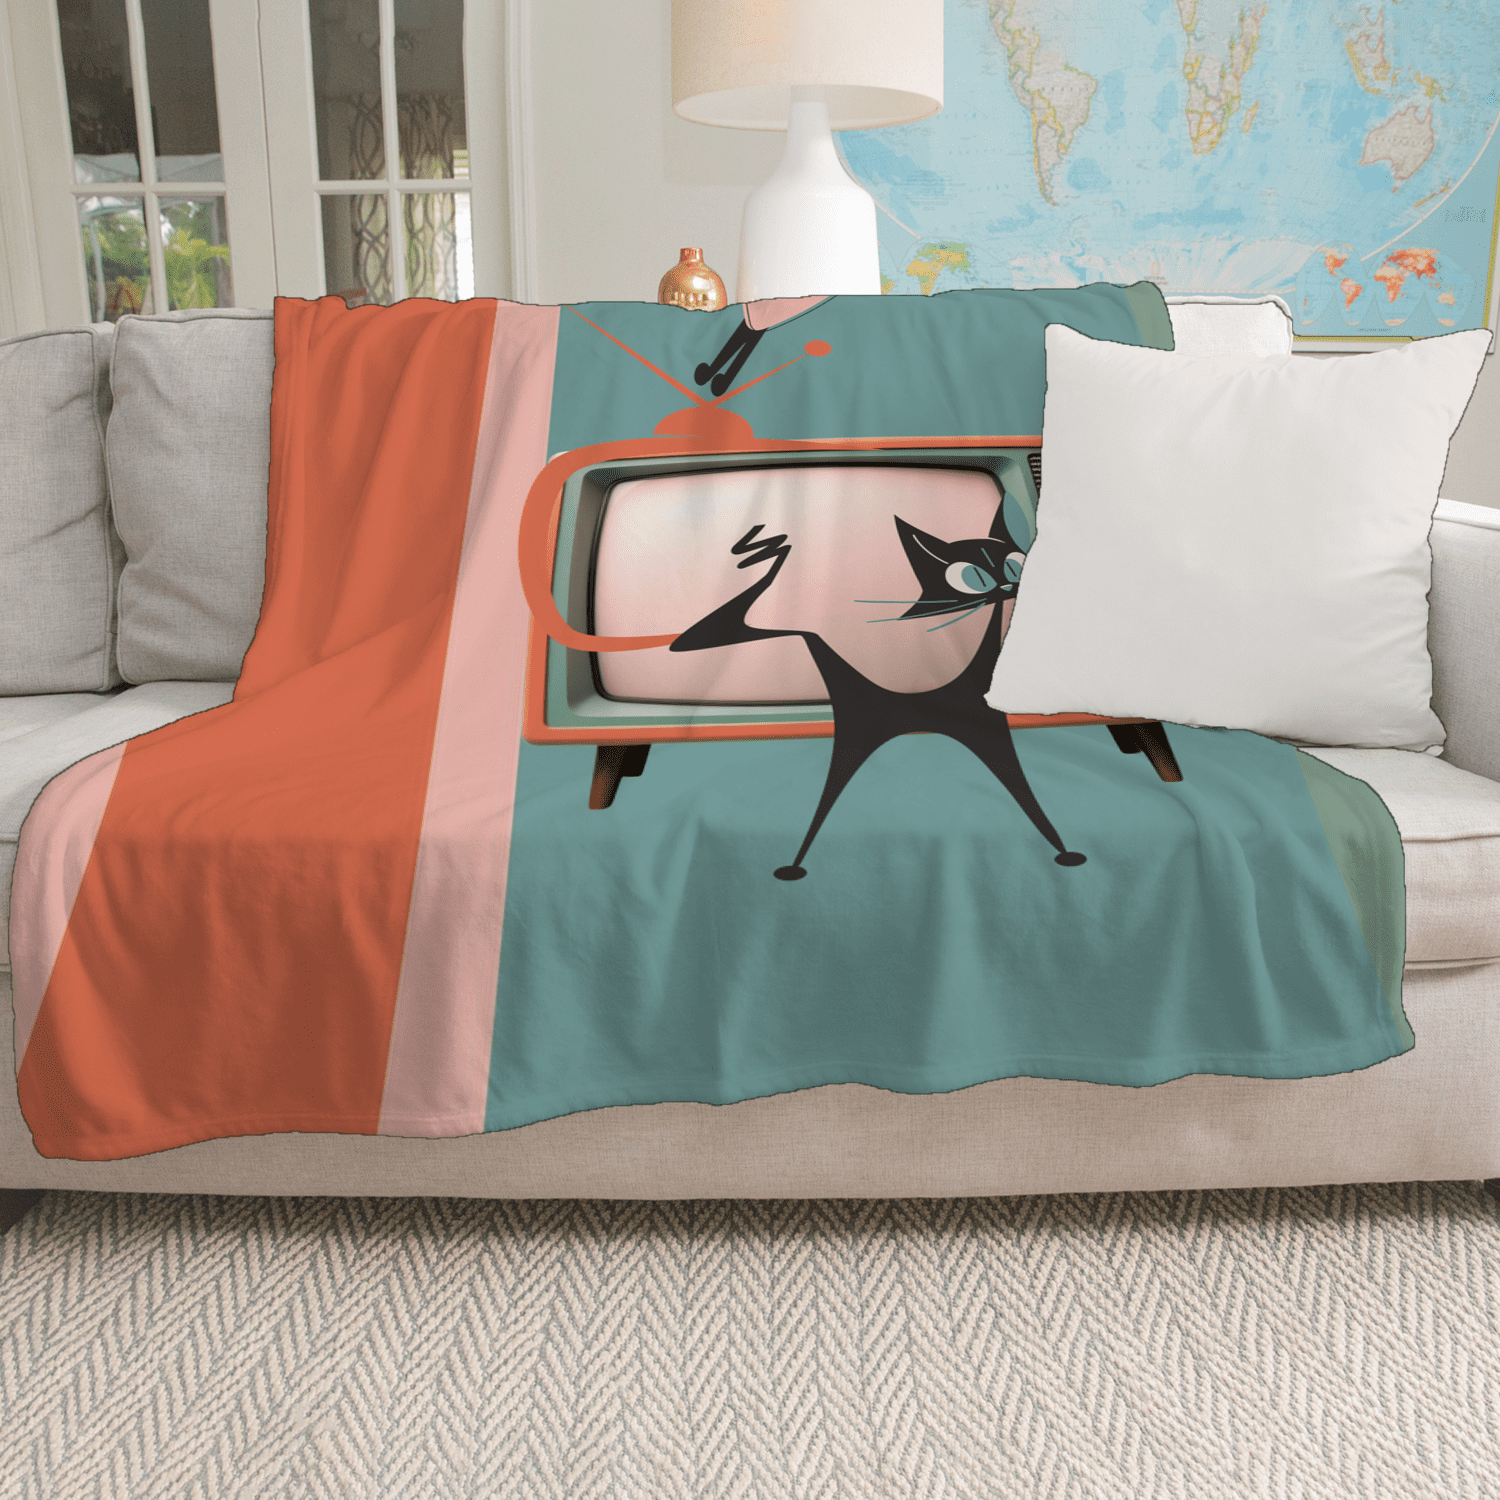 Atomic Cat TV Room, Snuggly Cozy Kitschy 50s Mid Century Modren 50s TV,Minky Blanket